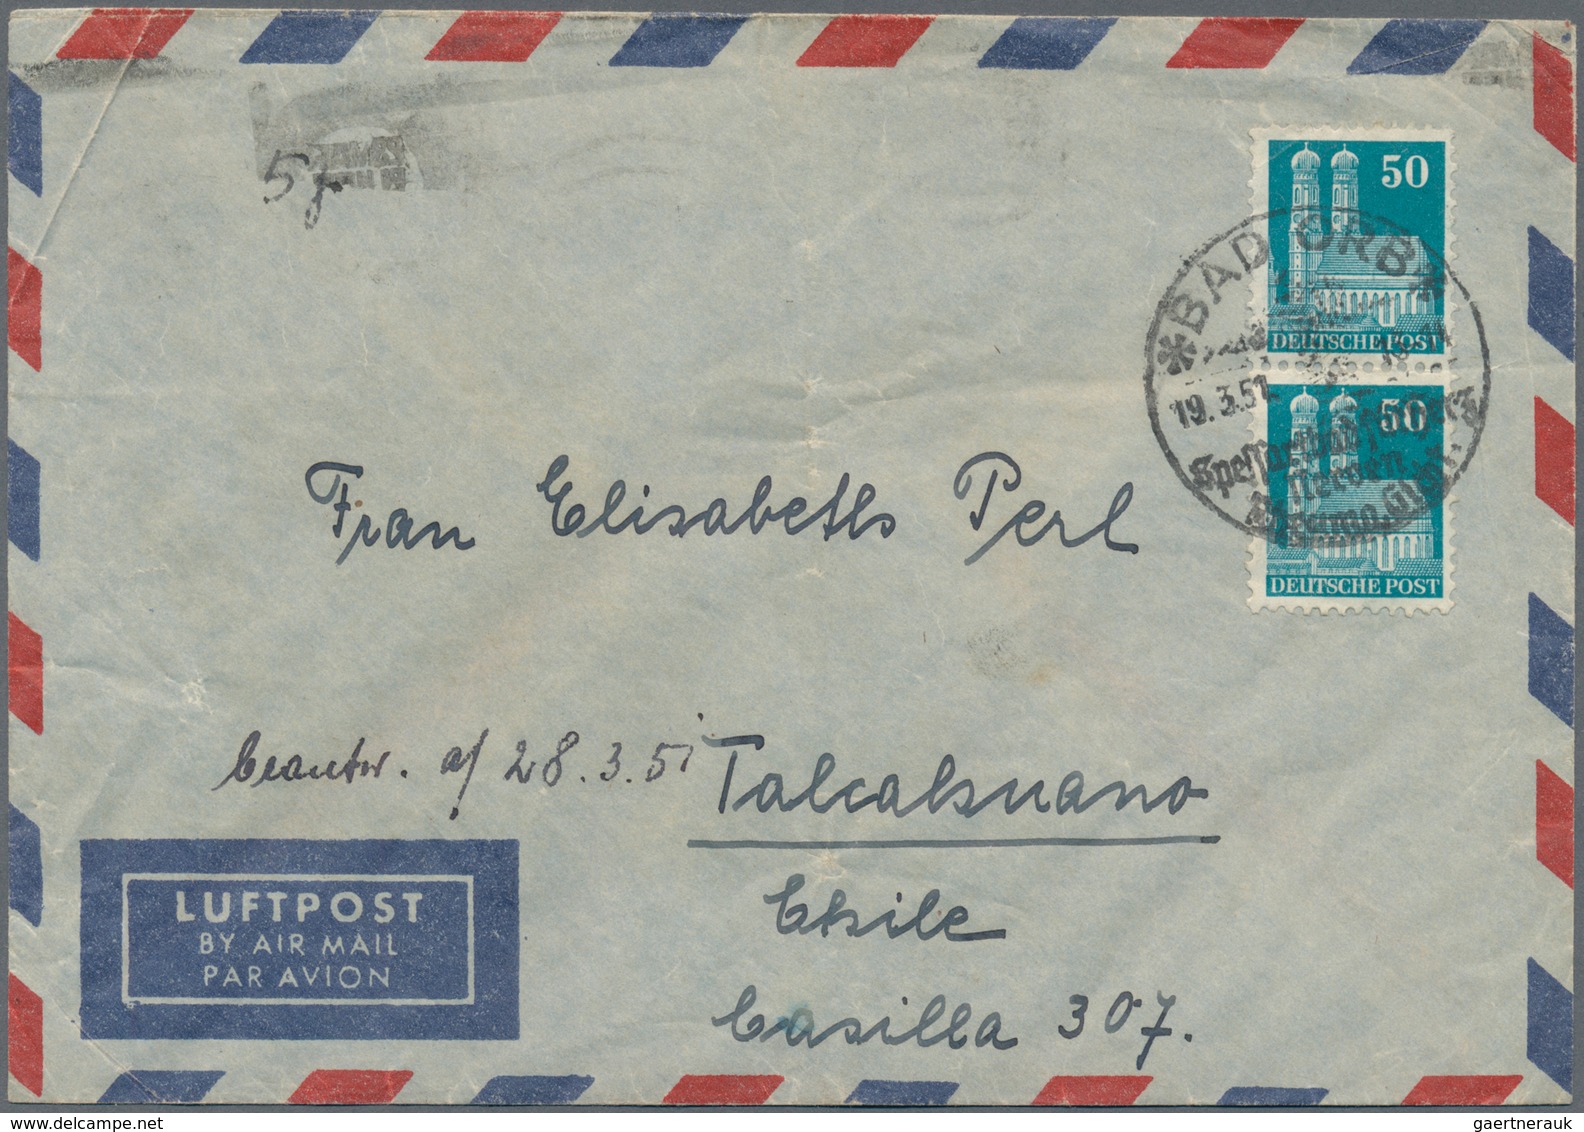 Bundesrepublik Deutschland: 1949/1990, vielseitige Partie von ca. 109 Briefen aus eine Korrespondenz